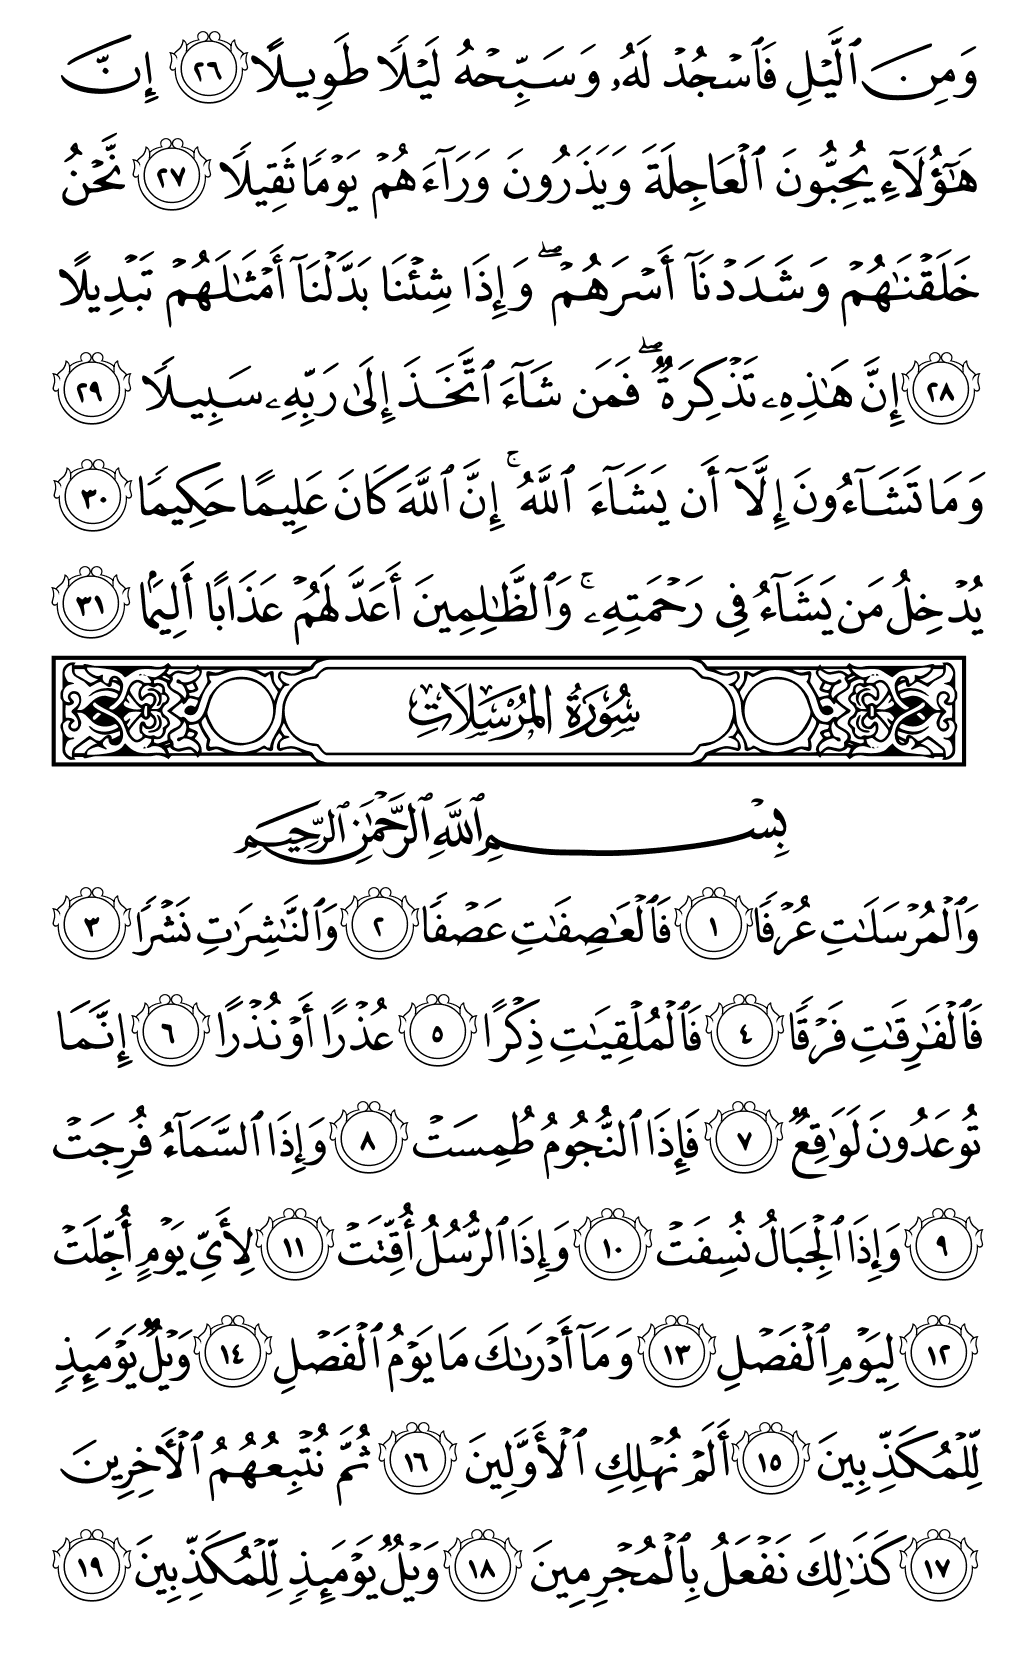 الصفحة رقم 580 من القرآن الكريم